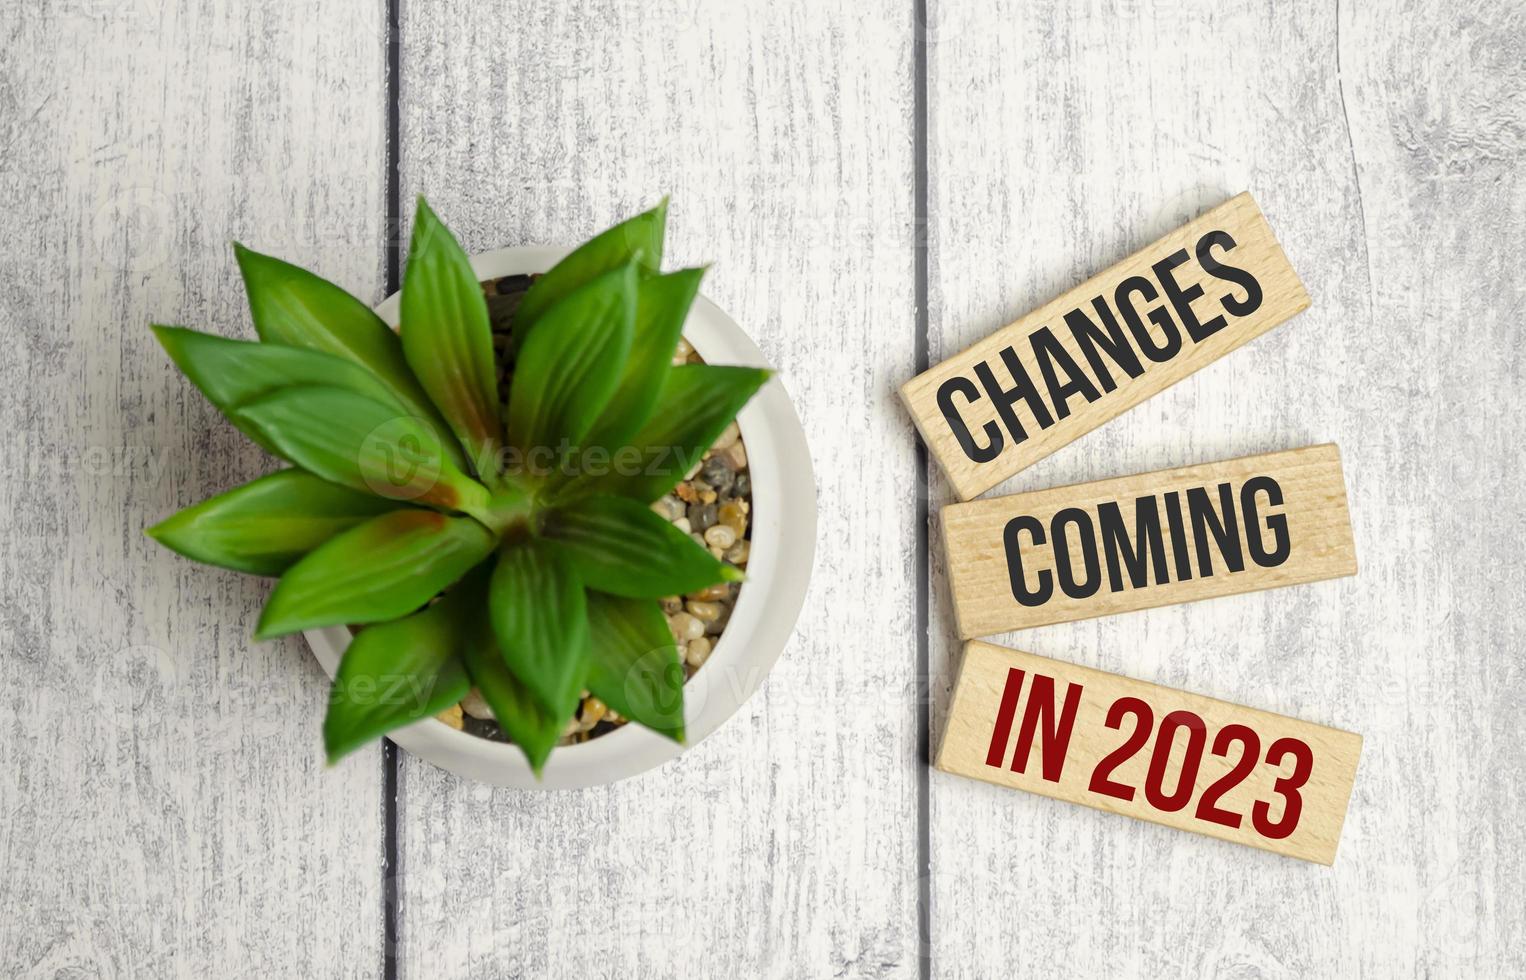 verandering komt in 2023 symbool op houten blokken en groene plant foto